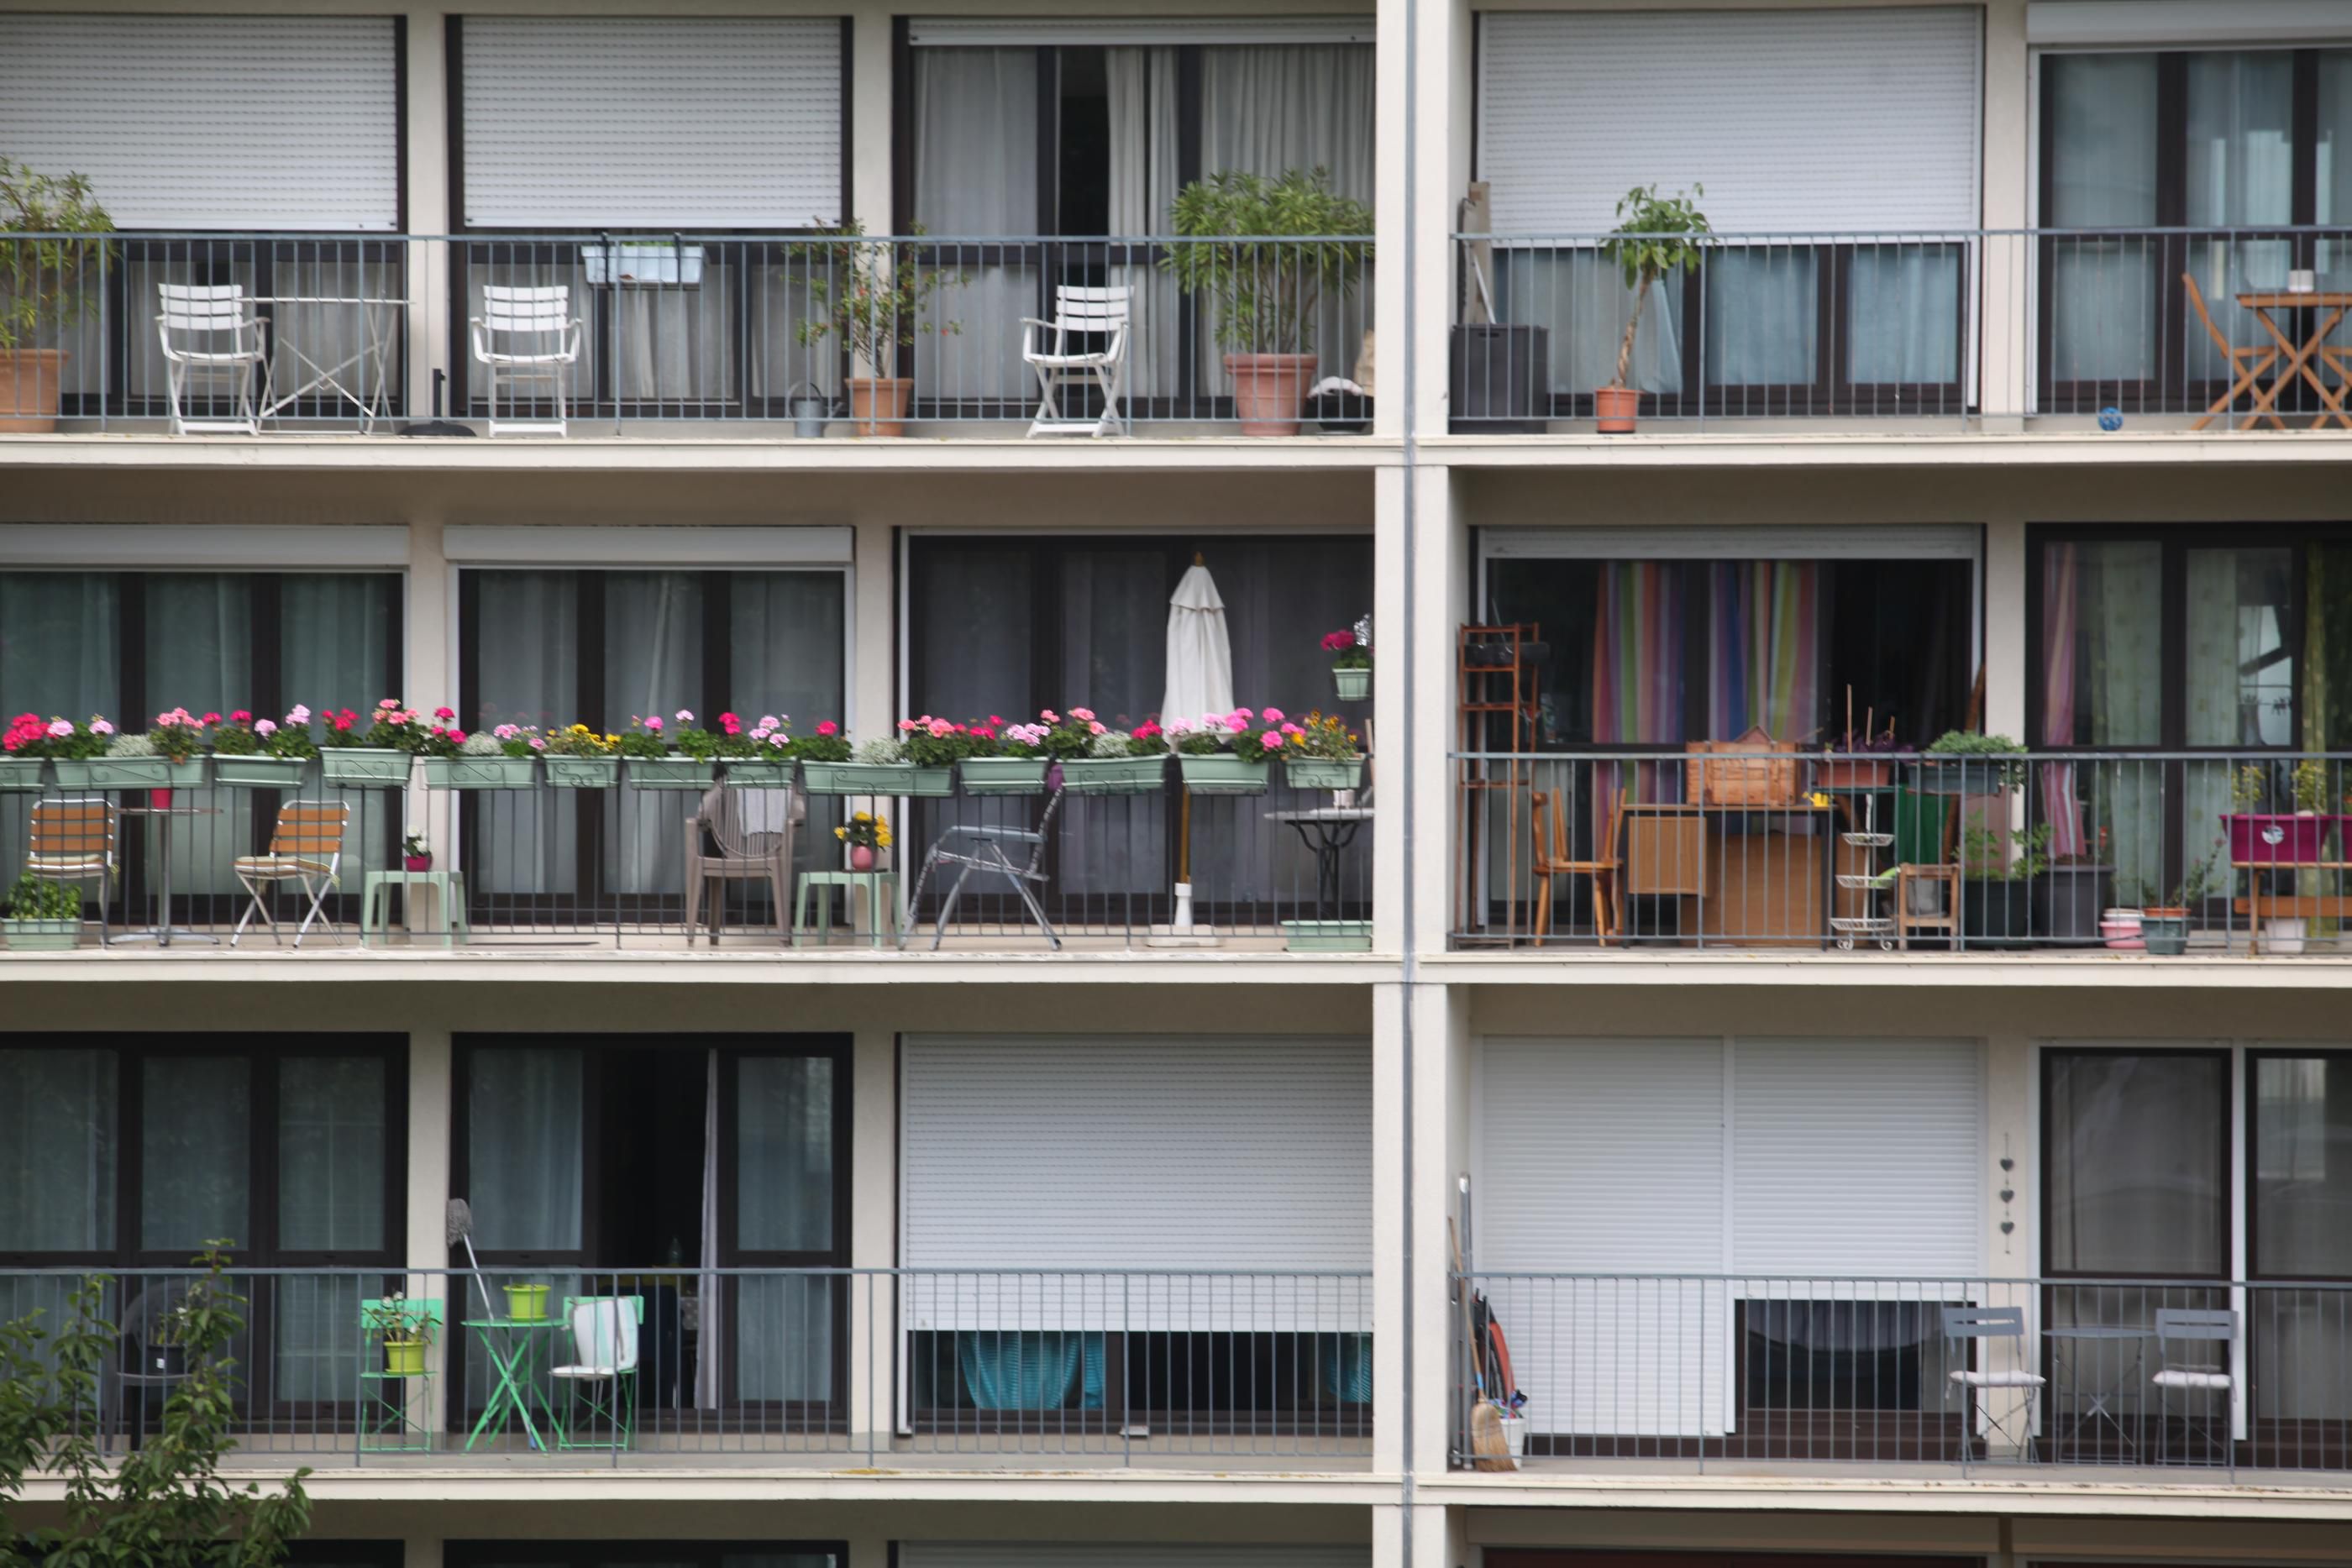 Terrasse, balcon, jardinet… un extérieur est devenu impératif pour beaucoup depuis la crise sanitaire. (Illustration) LP/OLIVIER BOITET